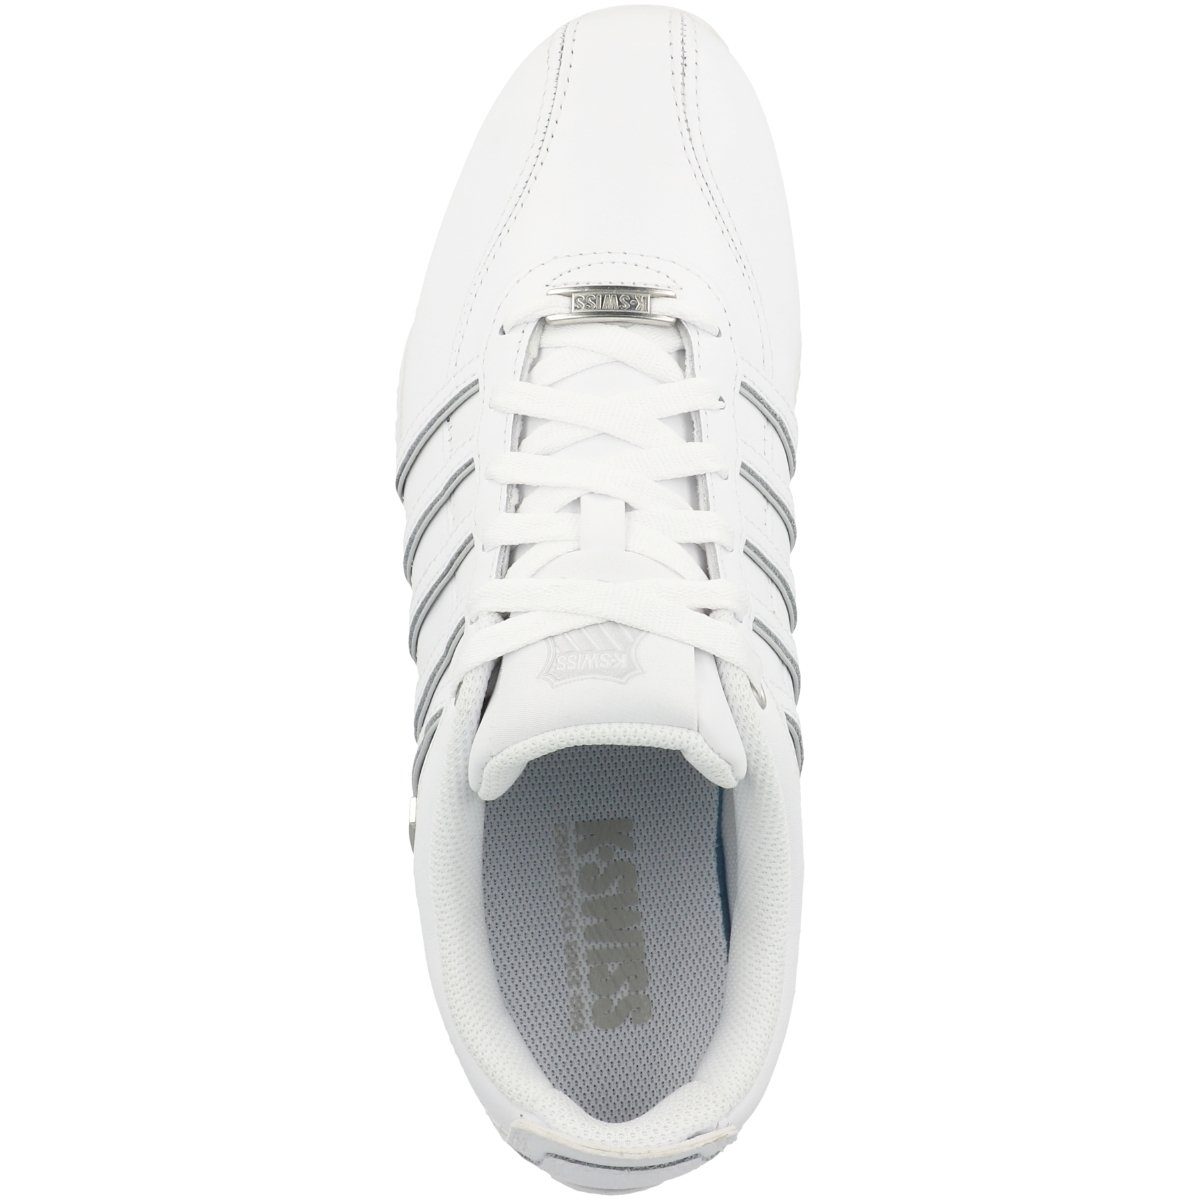 Arvee (11403022) WHITE/WHITE/GRAY Sneaker K-Swiss Herren 1.5 VIOLET/SPLIT-